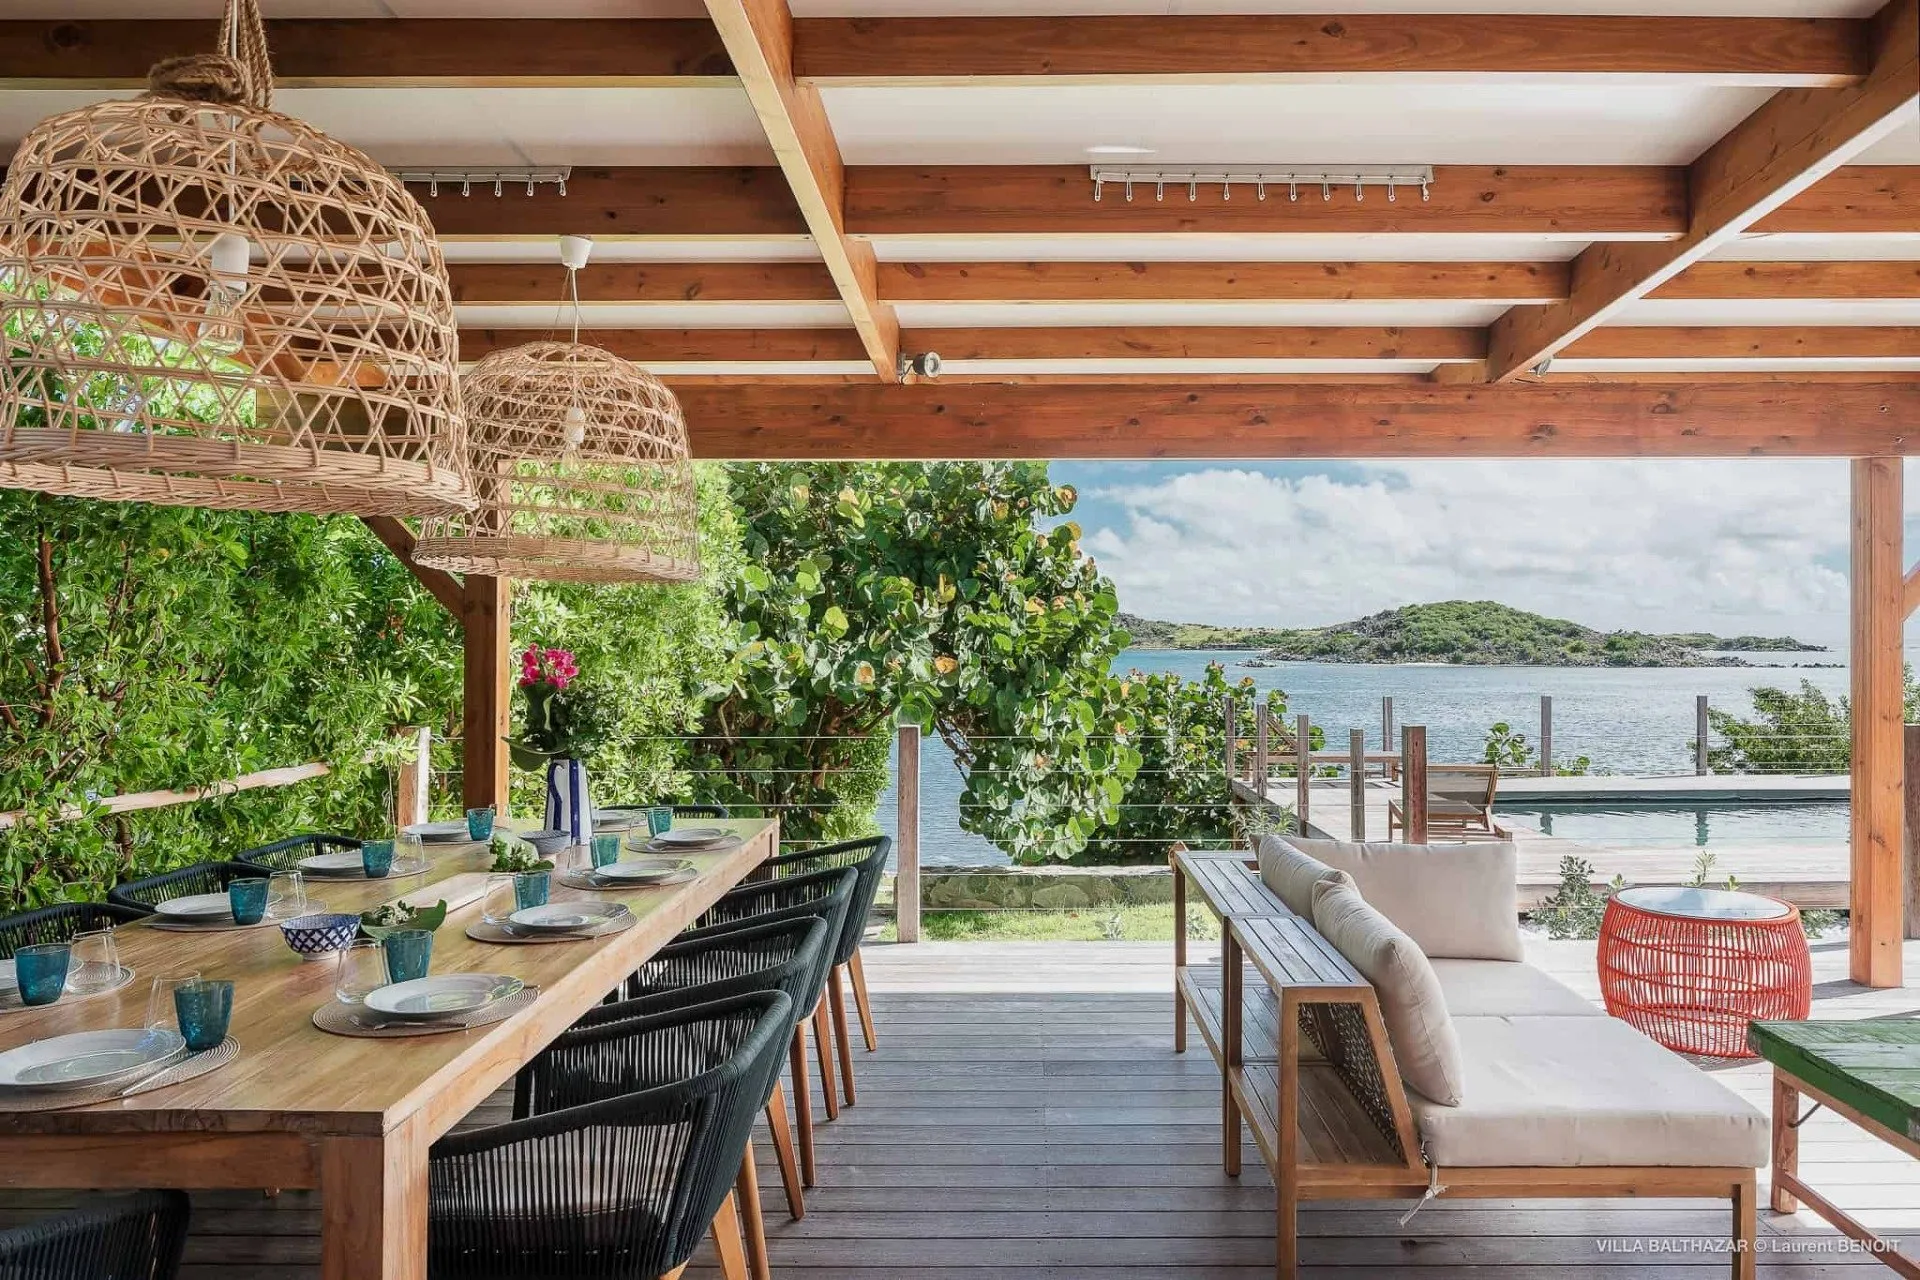 terrasse extérieure couverte avec table pour le repas, chaises et la table est dressée avec vaisselle et vue sur la mer avec piscine privée